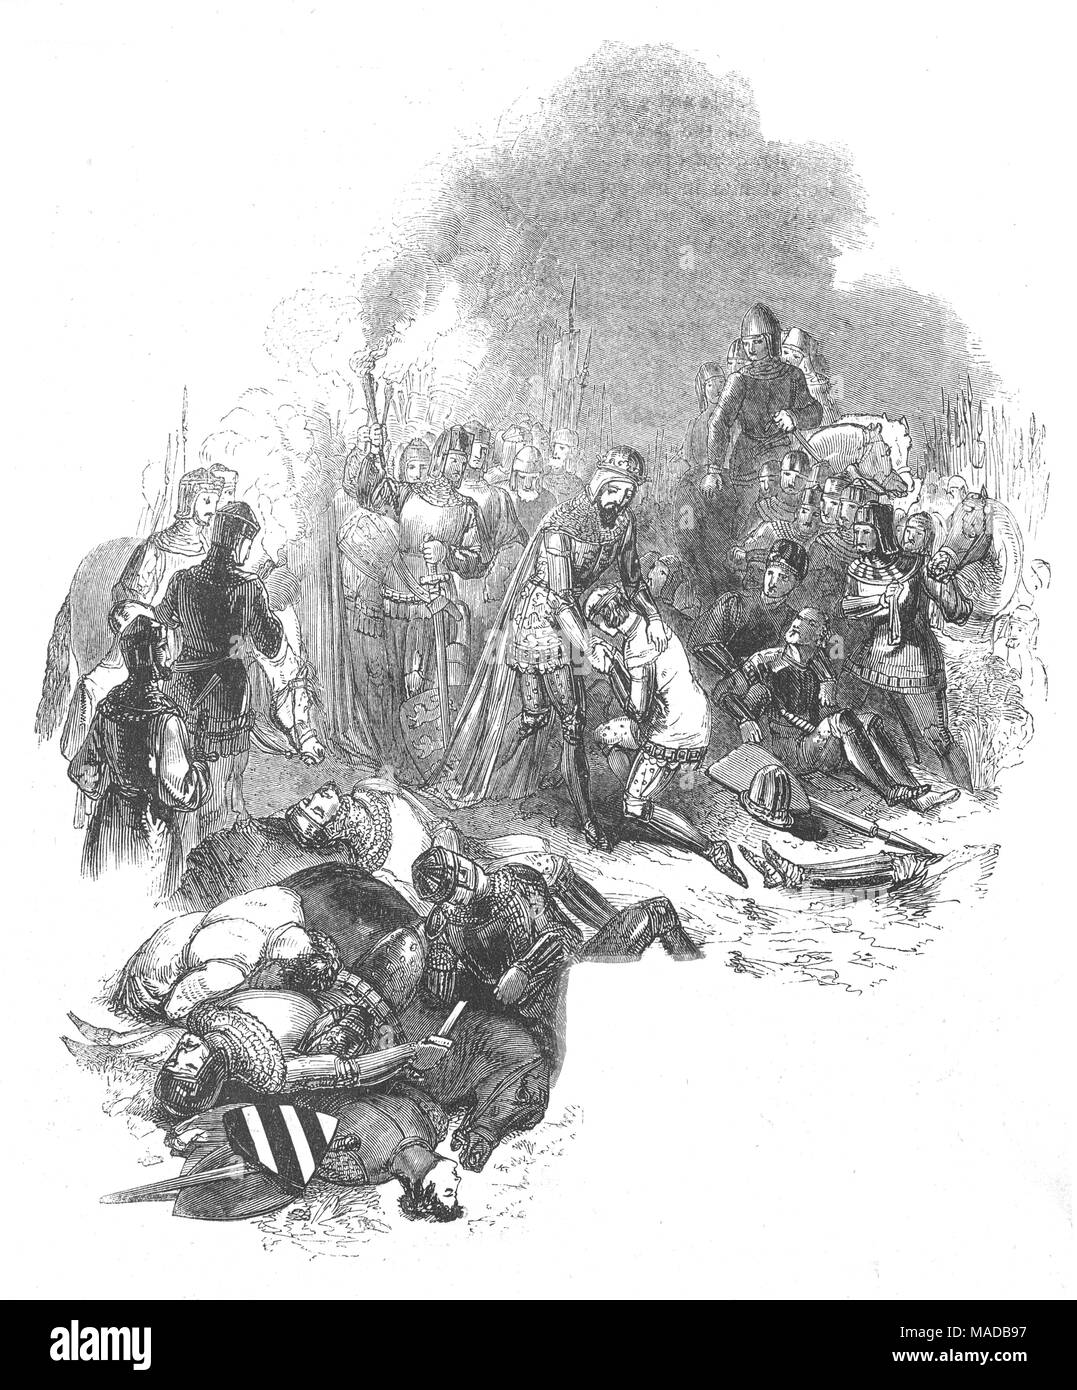 Die Schlacht von Crécy aka, der Schlacht von Cressy, wurde am 26. August 1346 in der Nähe von Pont-saint gekämpft, im Norden Frankreichs. Es war ein englischer Sieg während der EDWARDIANISCHEN Phase des Hundertjährigen Krieges, als eine Armee von Englisch, Walisisch, und verbündete Söldnertruppen von Edward III. von England führte, engagiert und besiegte ein viel größeres Heer des Französischen, Genuesen und mallorquinische Truppen unter der Führung von Philipp VI. von Frankreich. Mit der späteren Kämpfe von Poitiers im Jahr 1356, und Agincourt in 1415, es war das erste von drei berühmten Englischen Erfolge während des Konfliktes. Stockfoto